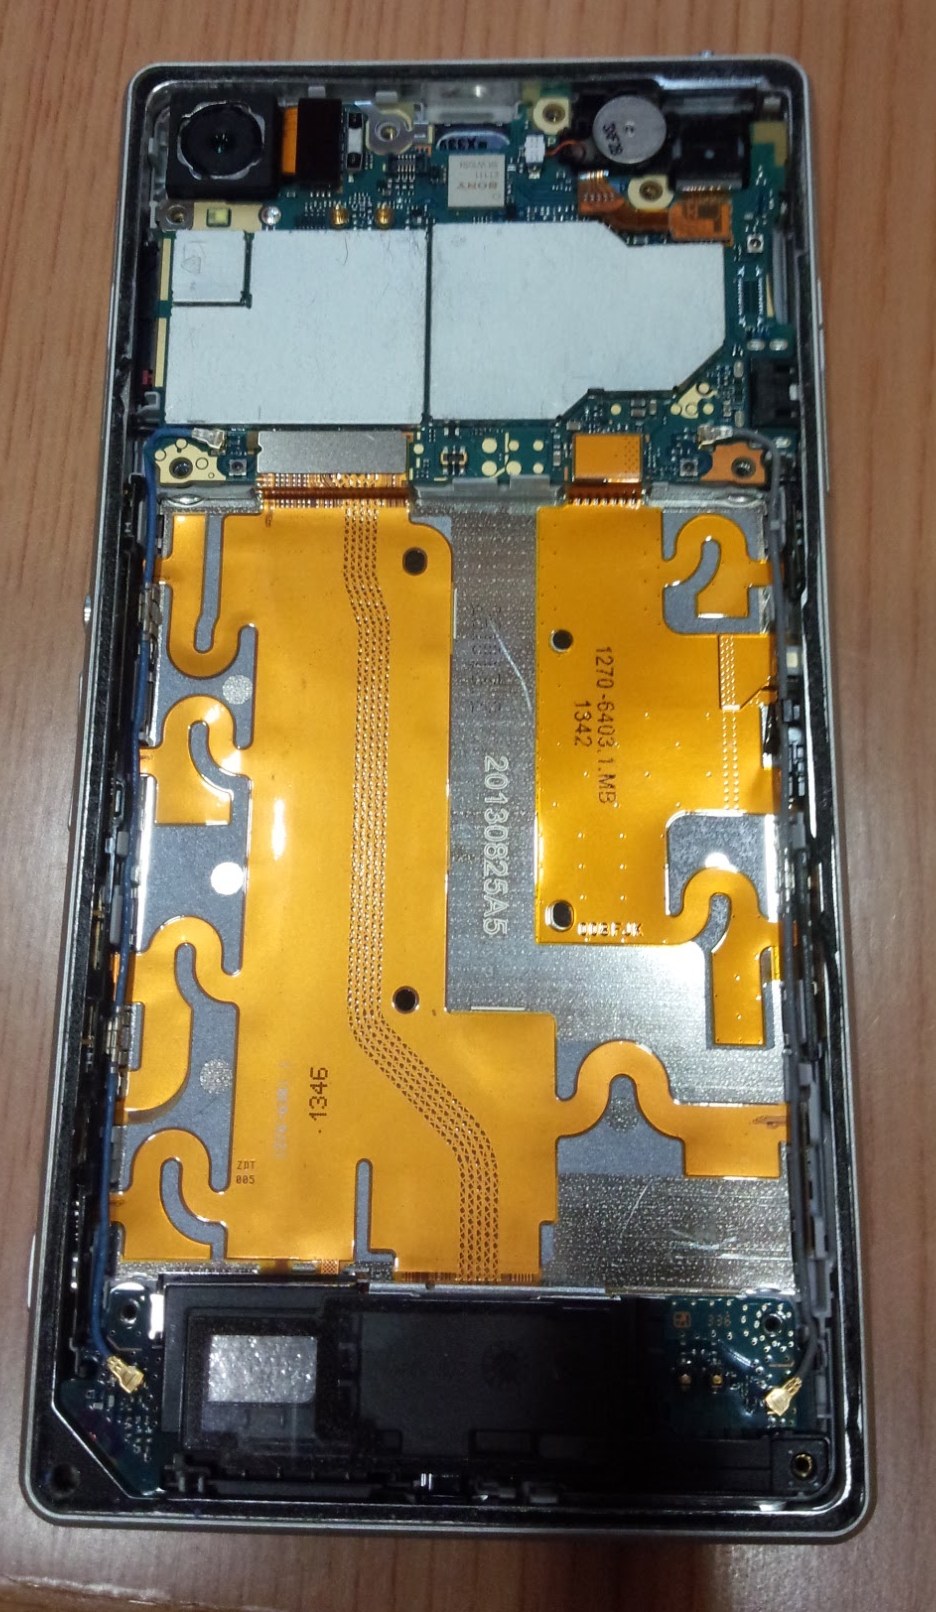 ドコモ Xperia Z1 So 01fの電池交換を自分でやってみる あとサブ機としての使い道とか エスナビ 子育て親による安くて使えるスマホ や便利なグッズの紹介